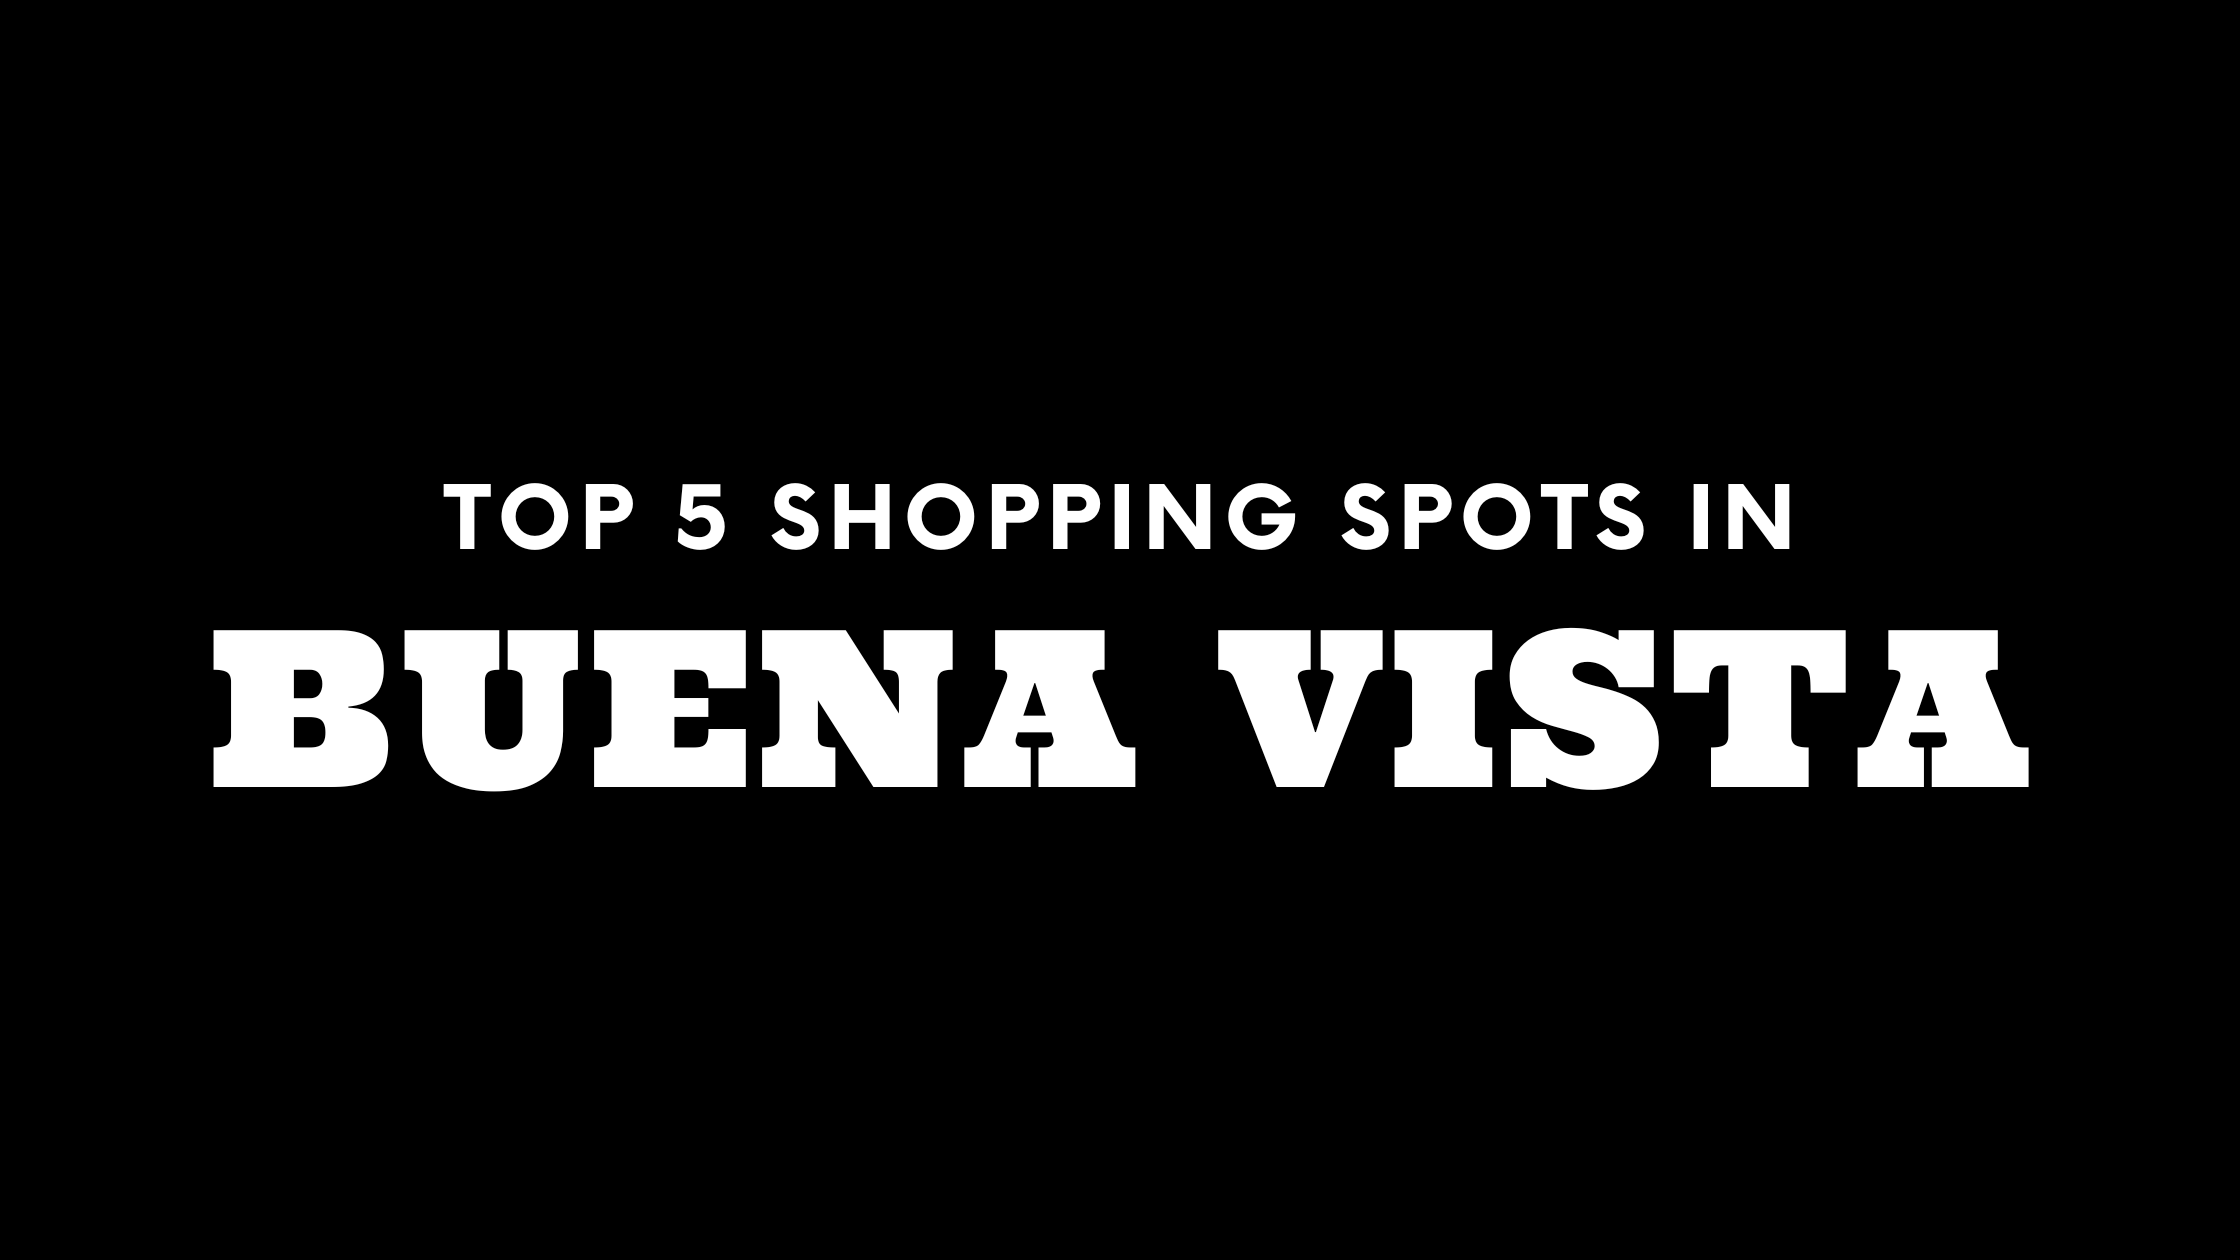 Top 5 Shopping Spots in Buena Vista